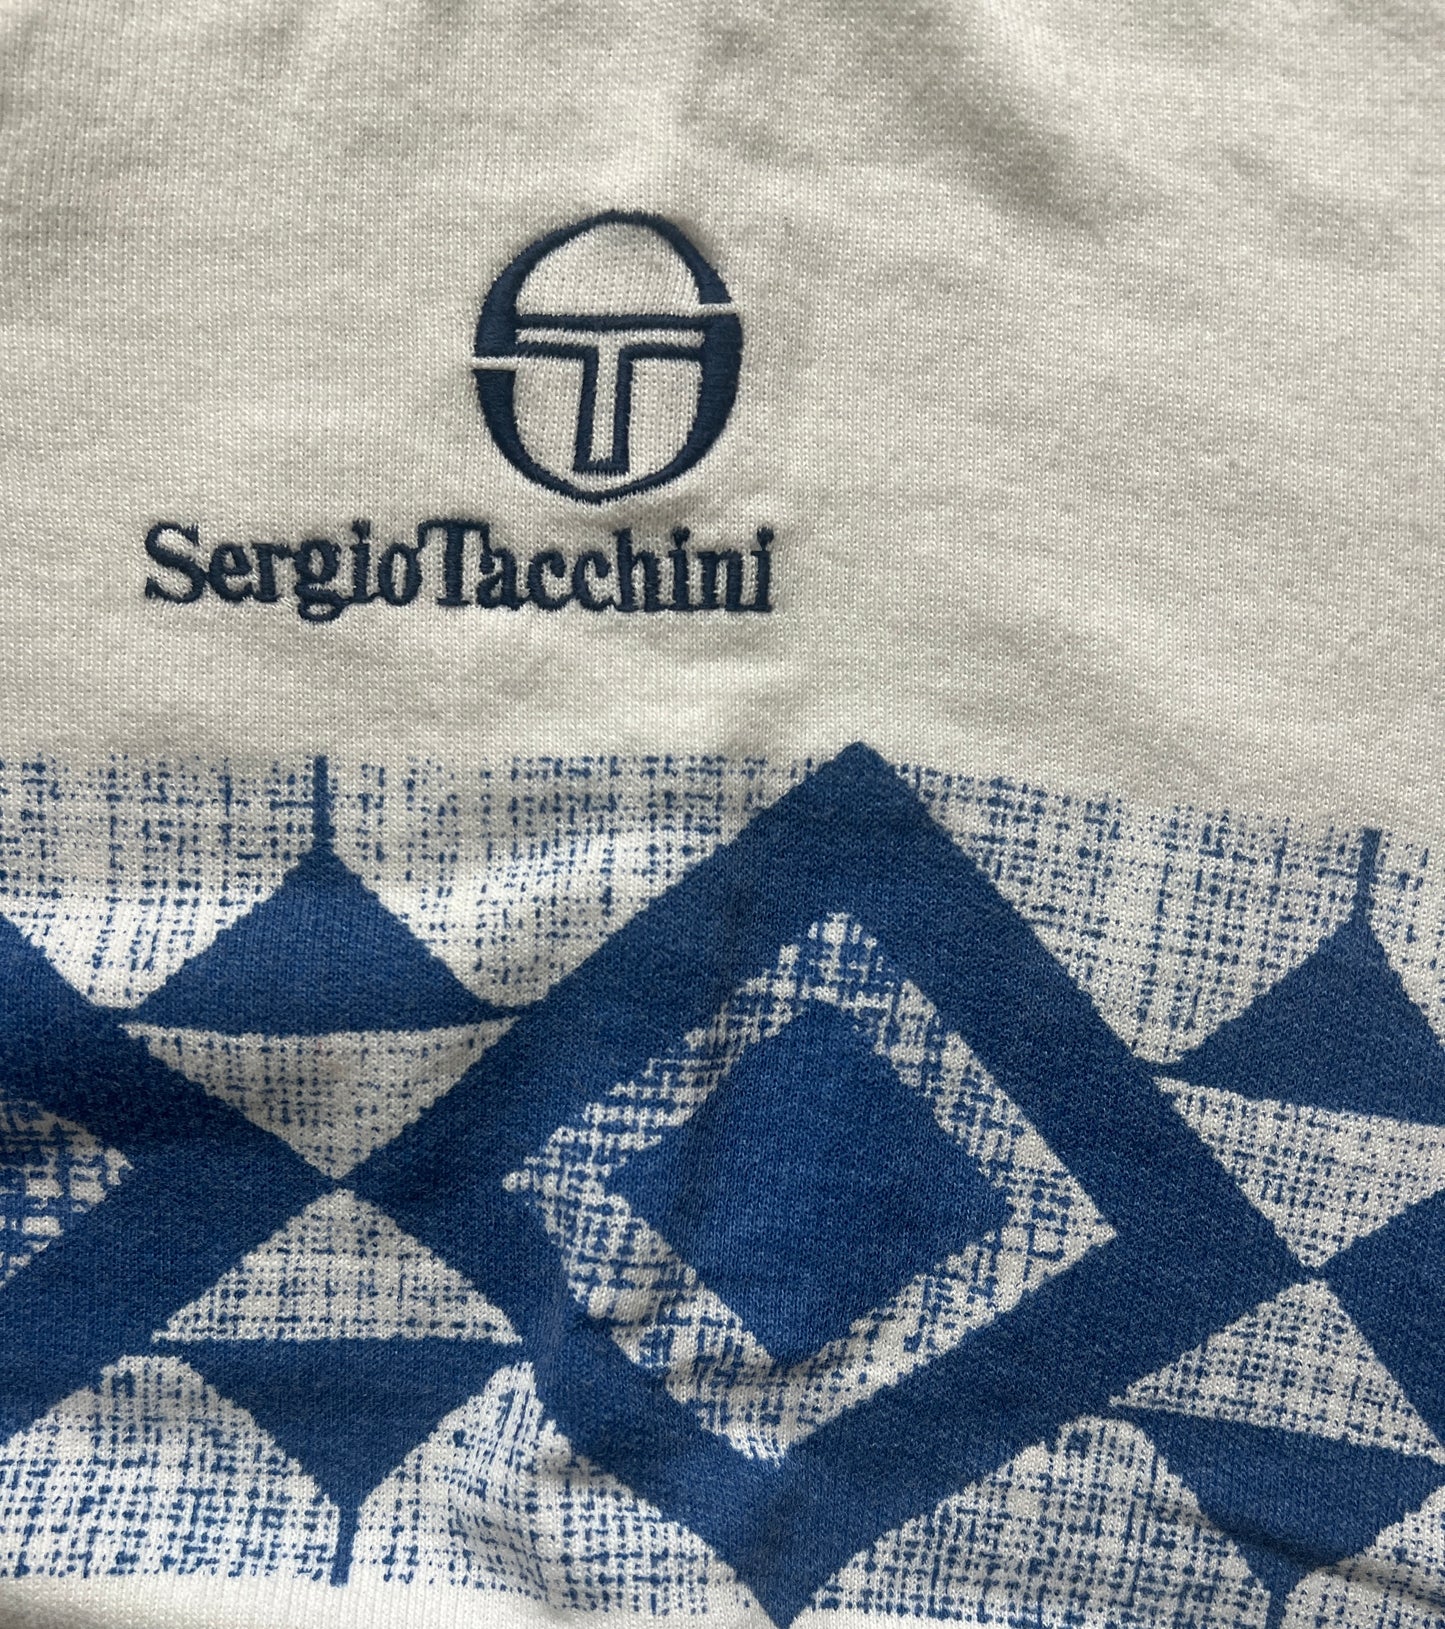 Vintage Sergio Tacchini Tennis Sweater Vest (circa 1980s)